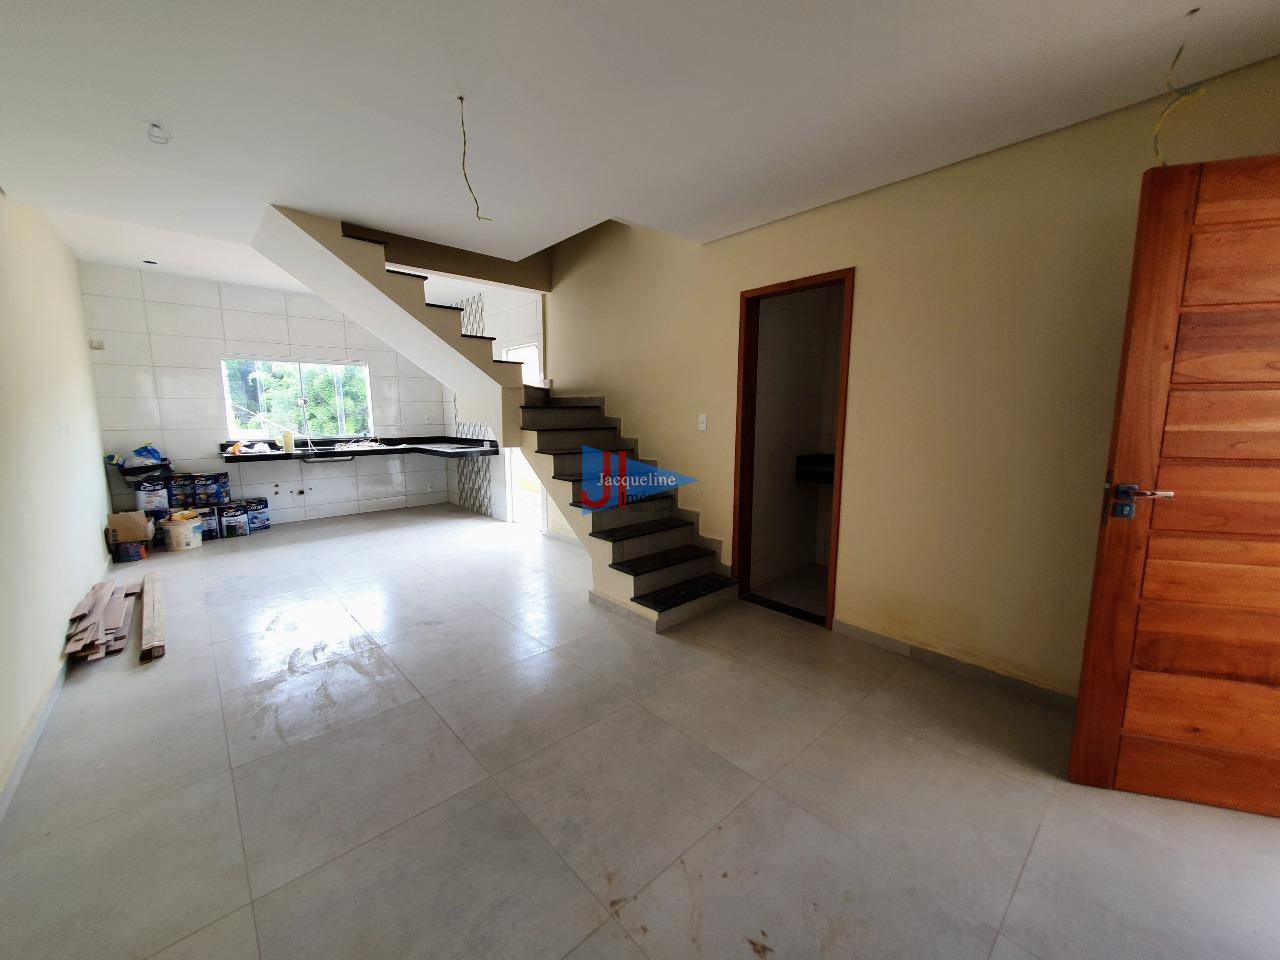 Casa à venda no Cachoeira: sala de estar integrada com jantar e cozinha